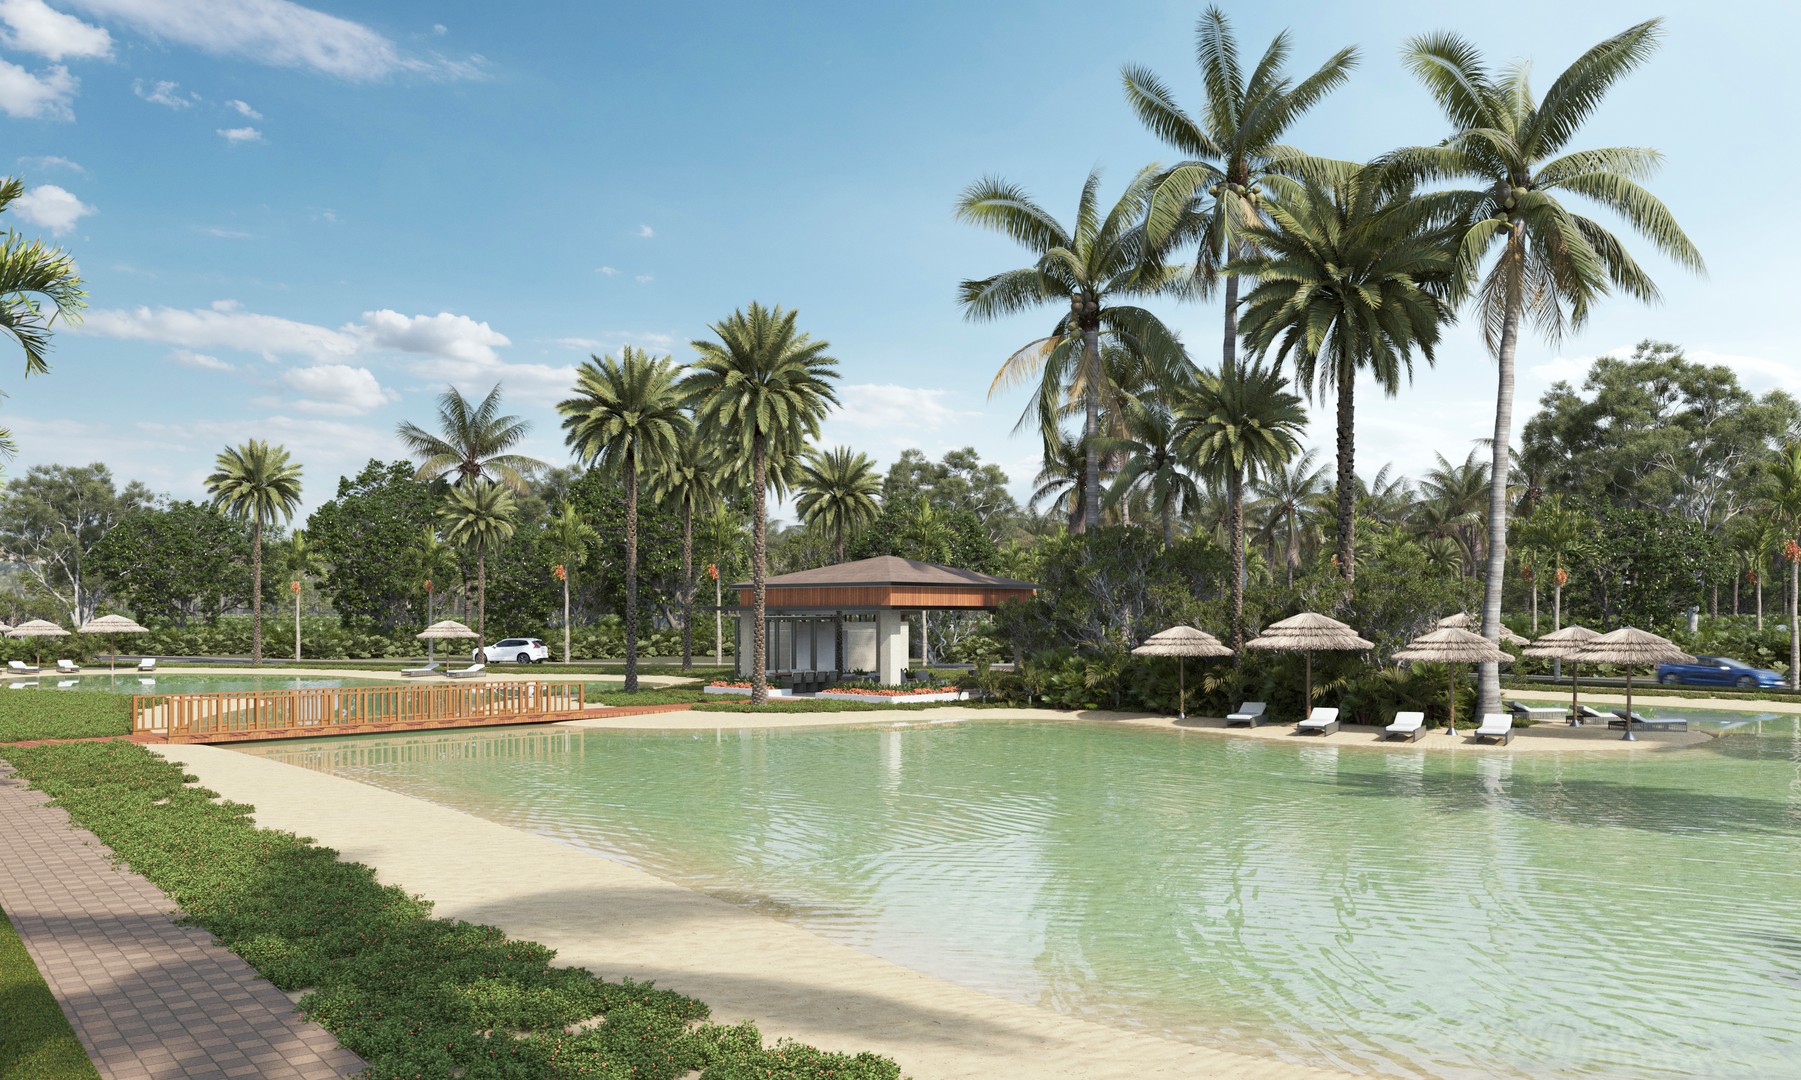 casas - Nueva Disponibilidad de villa en Bávaro Punta cana,  con piscina Incluida. 4